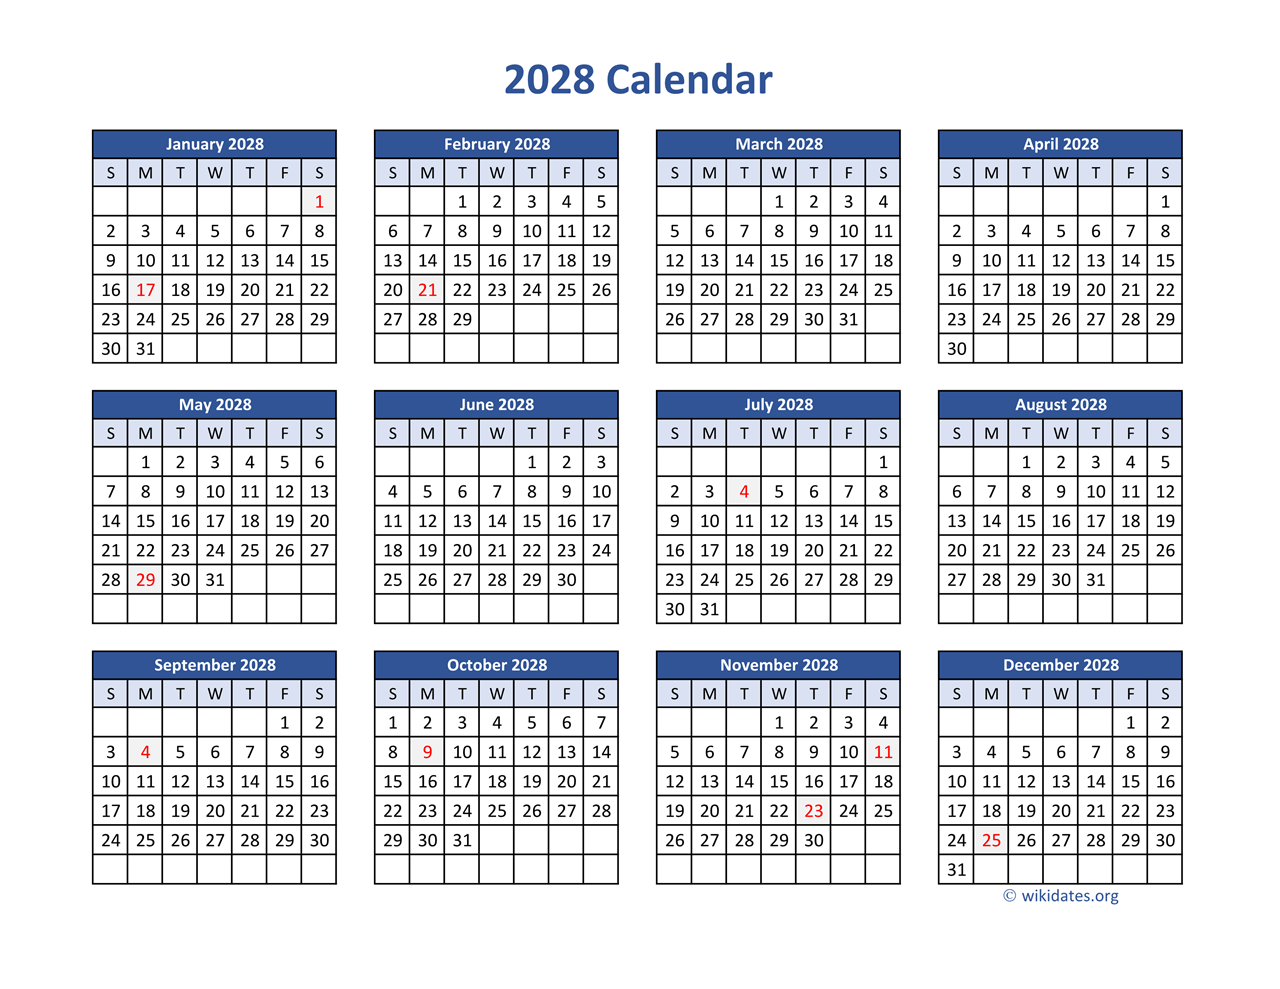 2028 Calendar in PDF